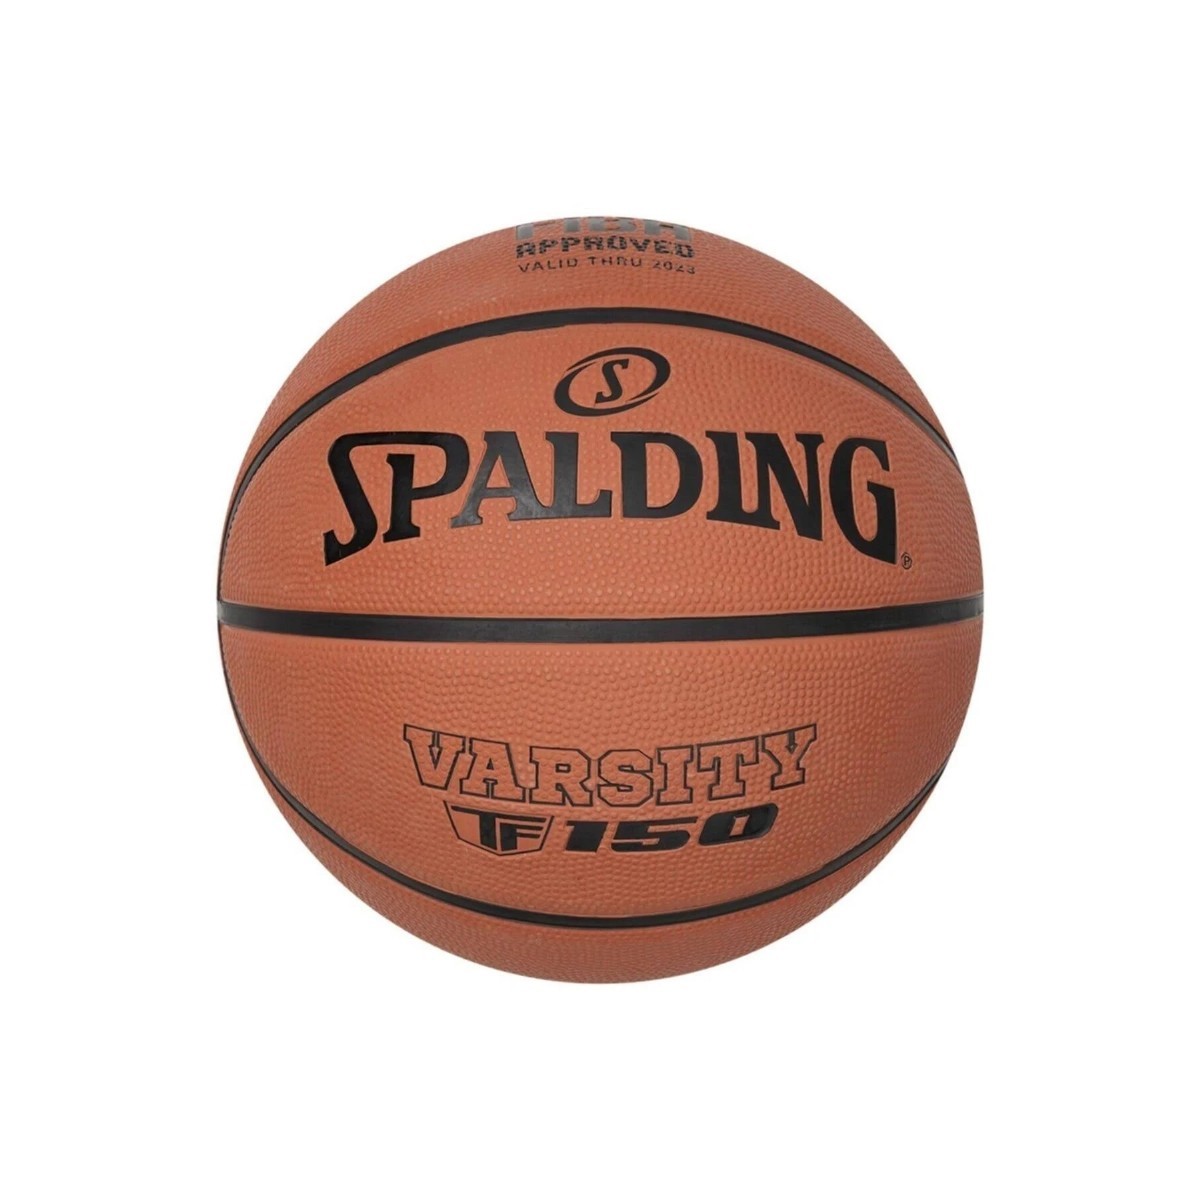 Basketbol Topları | SPALDING BASKETBOL TOPU TF-150 NO 7  | 0029321739550 | basketbol topu, basketbol, top, selex, kaliteli top, uygun fiyata top, takım sporları, ucuz top, kaliteli top | 